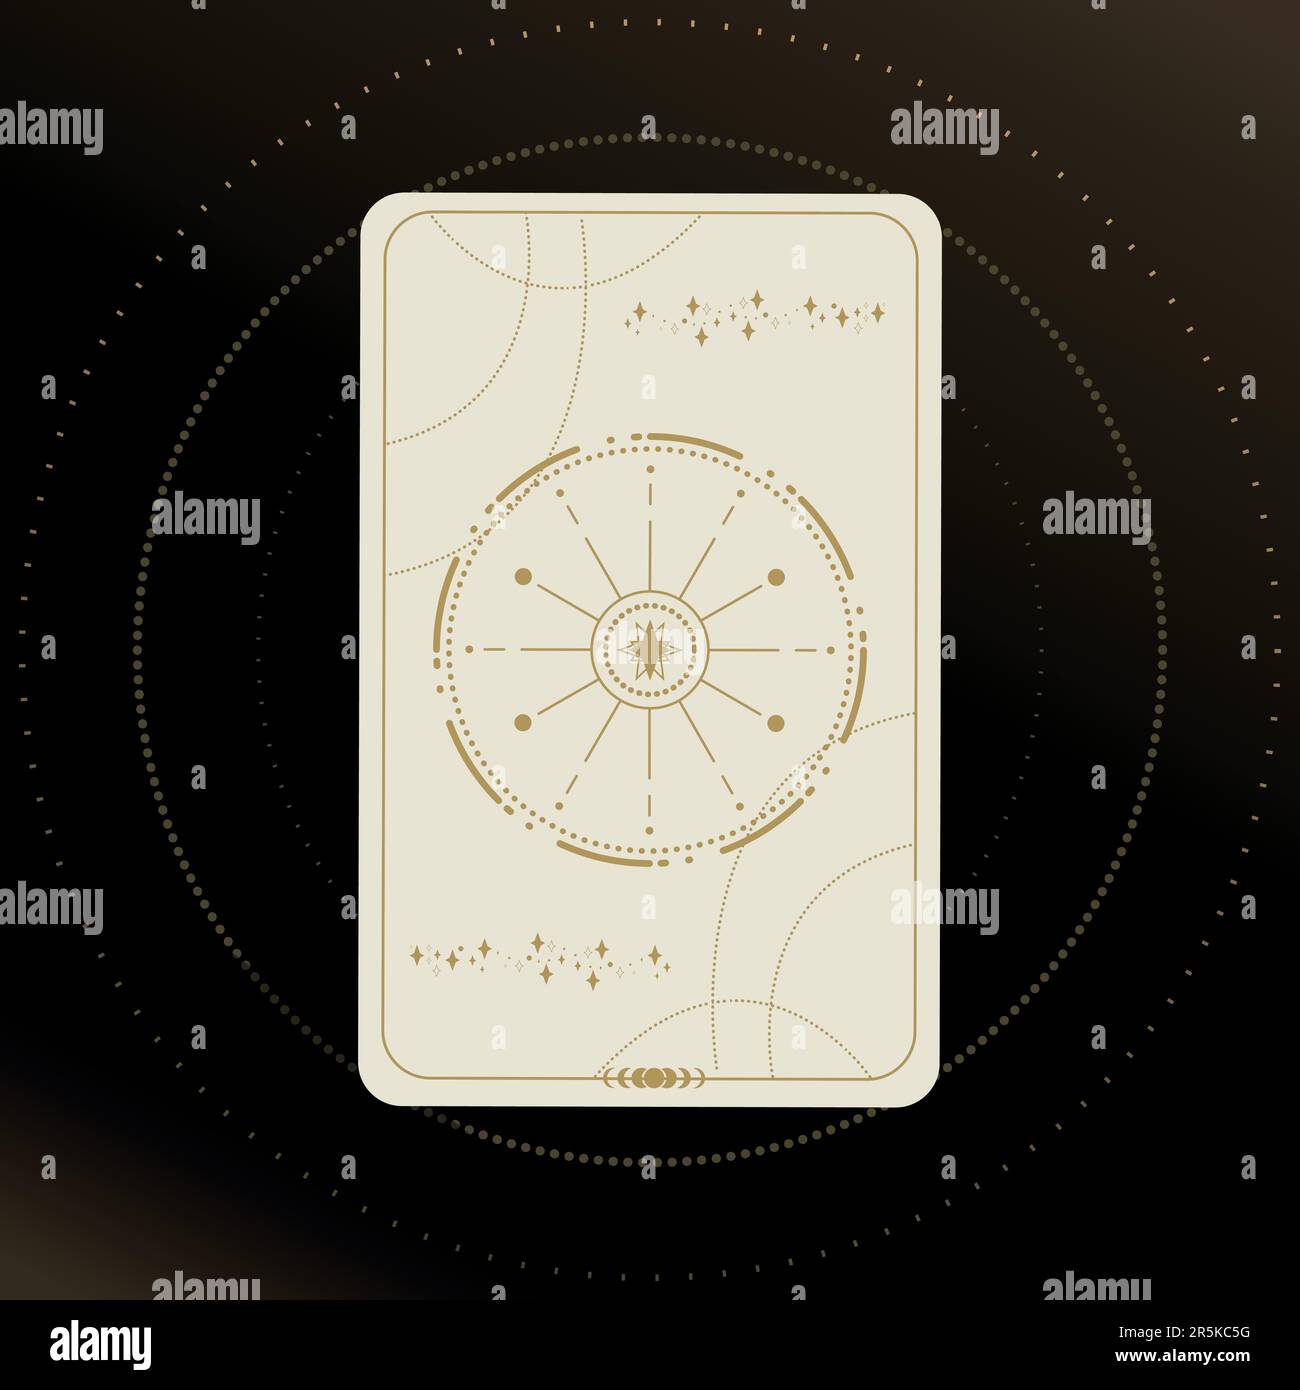 Goldene und weiße Tarotkarte mit einem Stern auf schwarzem Hintergrund und Sternen. Tarotsymbolik. Geheimnisvoll, Astrologie, esoterisch Stock Vektor